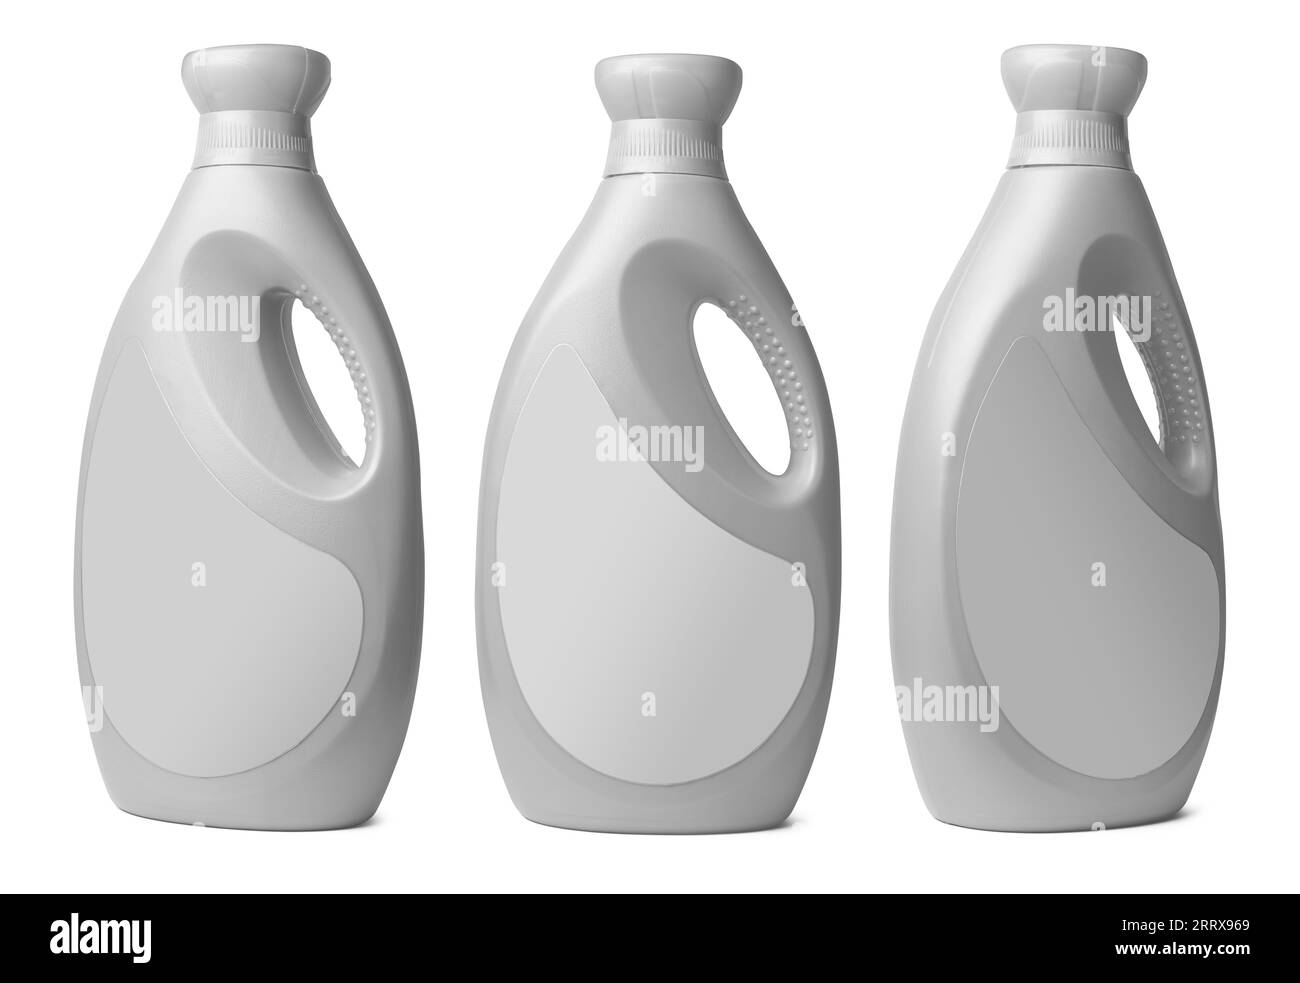 conjunto de botella de plástico química para el hogar con mango y etiqueta en blanco aislado sobre fondo blanco, detergente líquido o jabón, limpiador de baño, lavandería Foto de stock